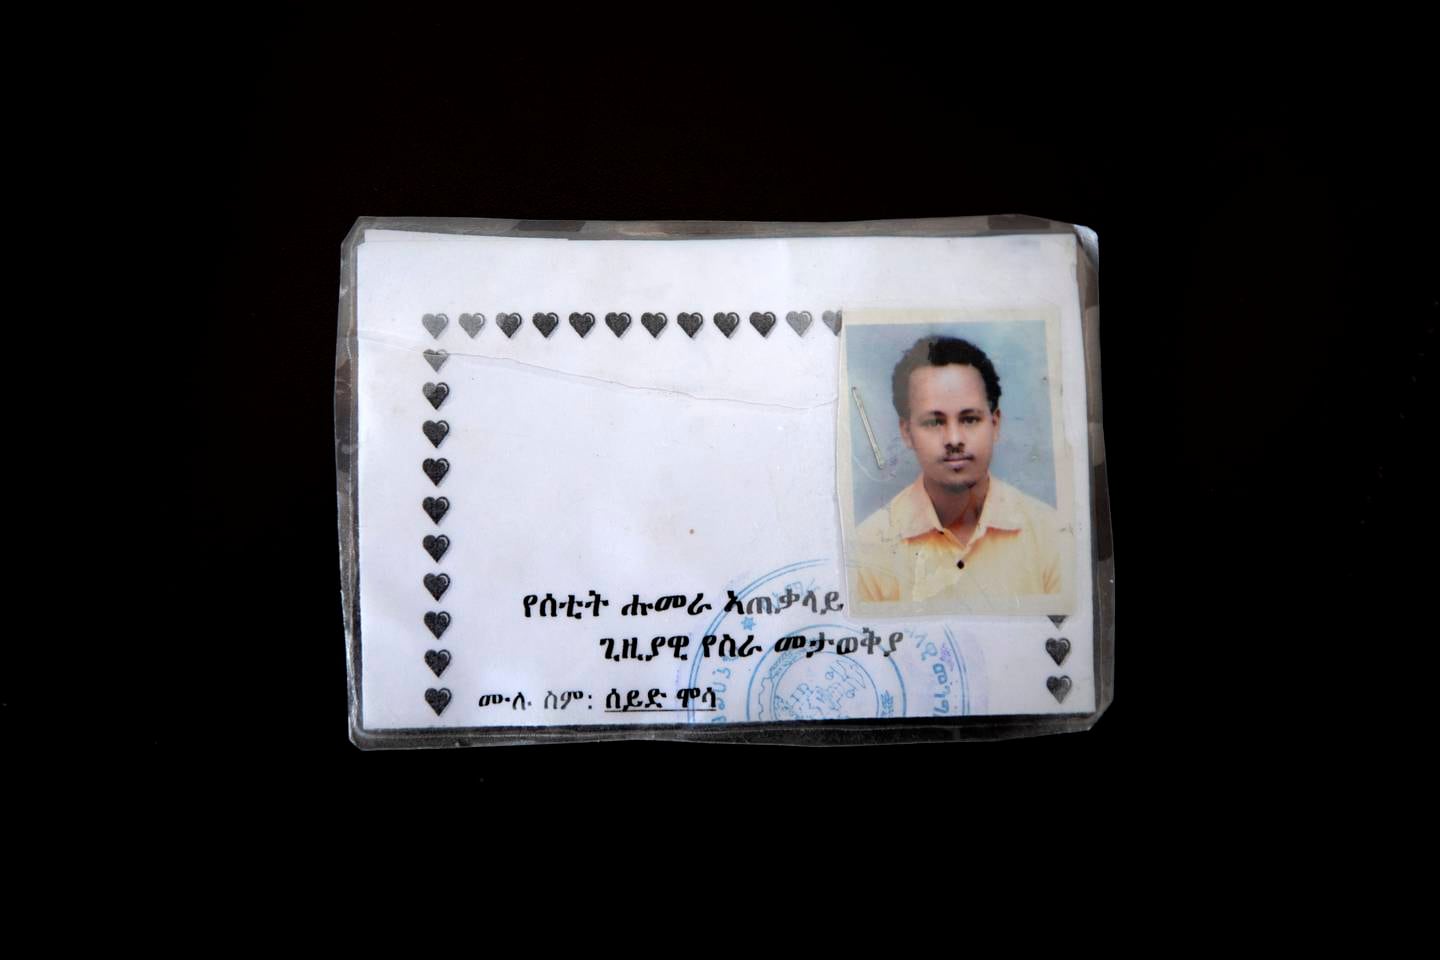 UFORSTÅELIG: Bildet viser ID-kortet til Seid Mussa Omar, en 29 år gammel sykepleier fra Tigray. ID-kortet er skrevet på amharisk, et språk han ikke forstår.